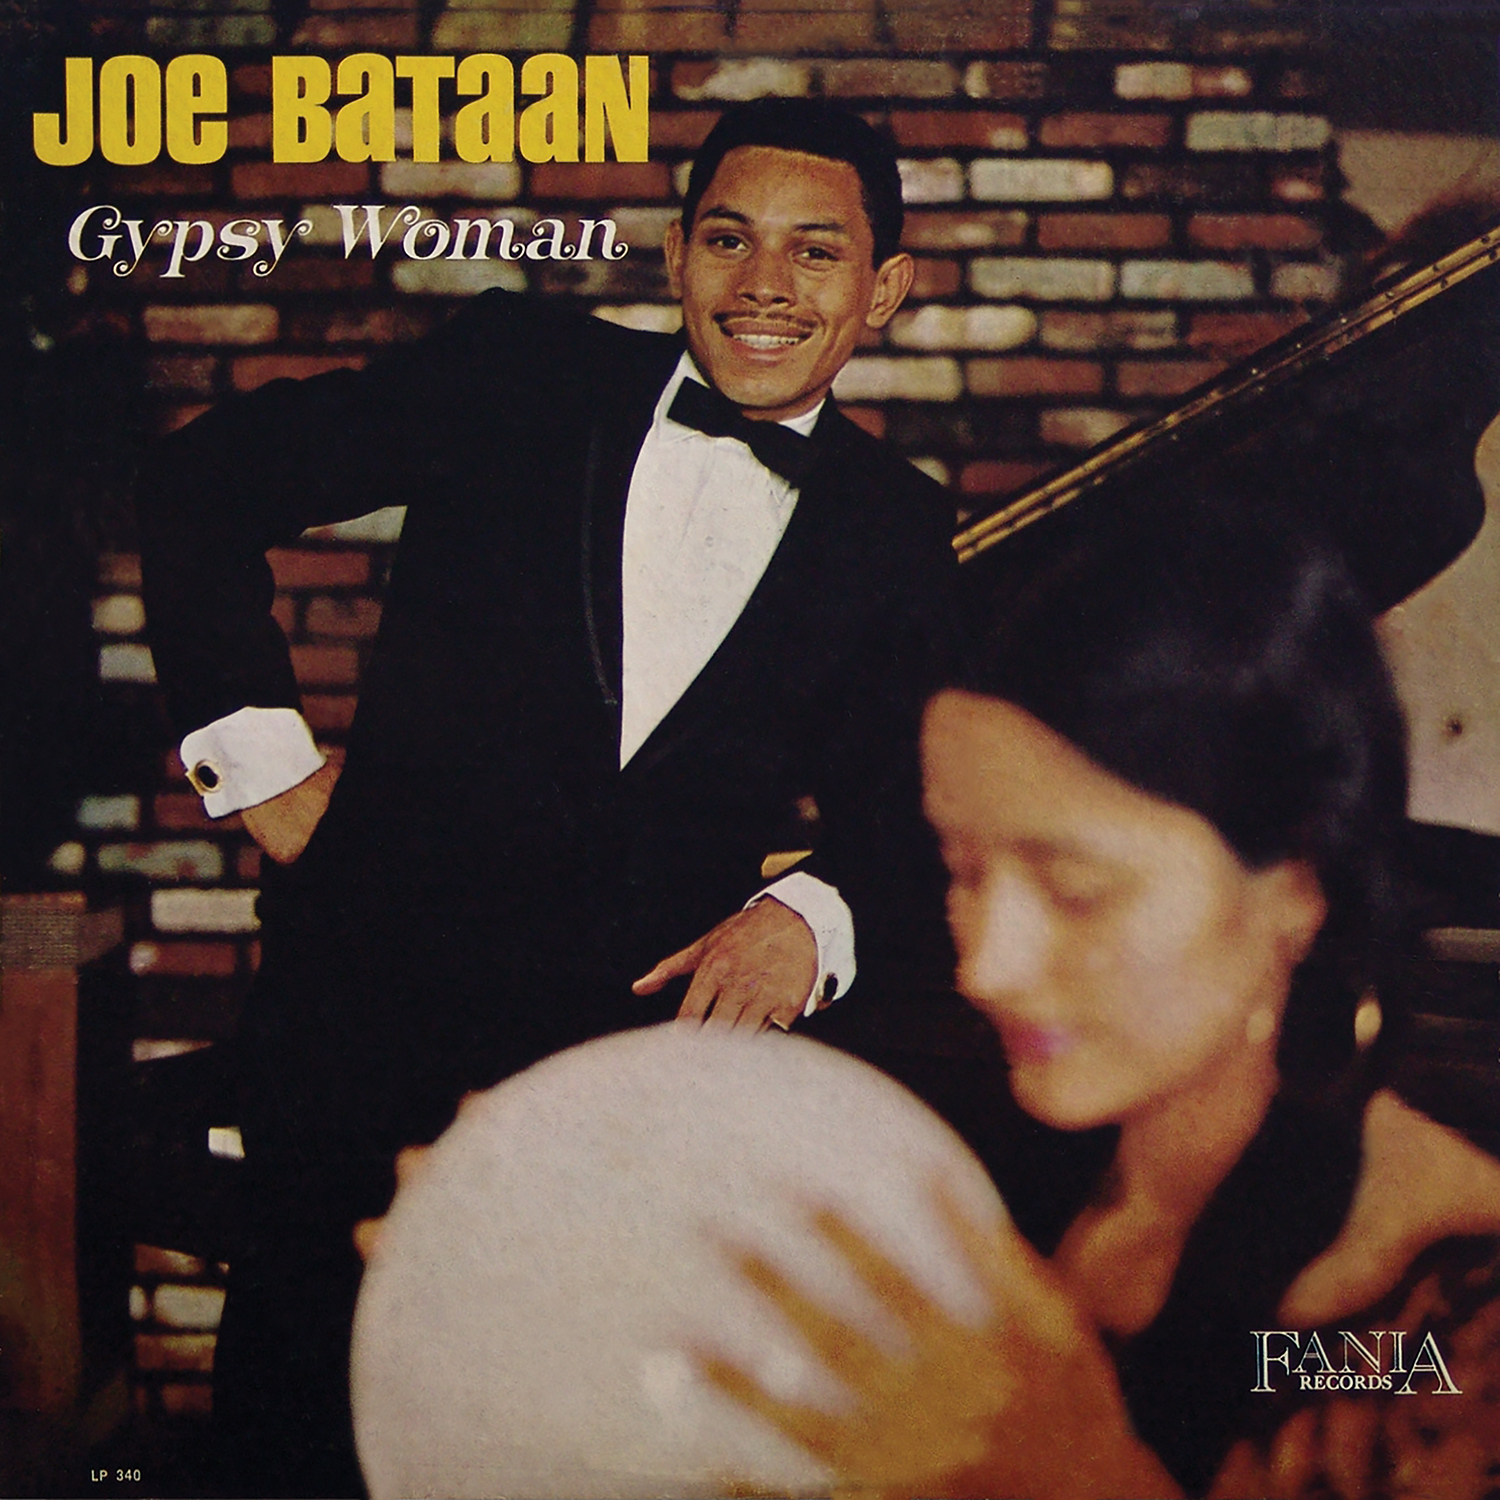 Imagen destacada de "Joe Bataan - Gypsy Woman"